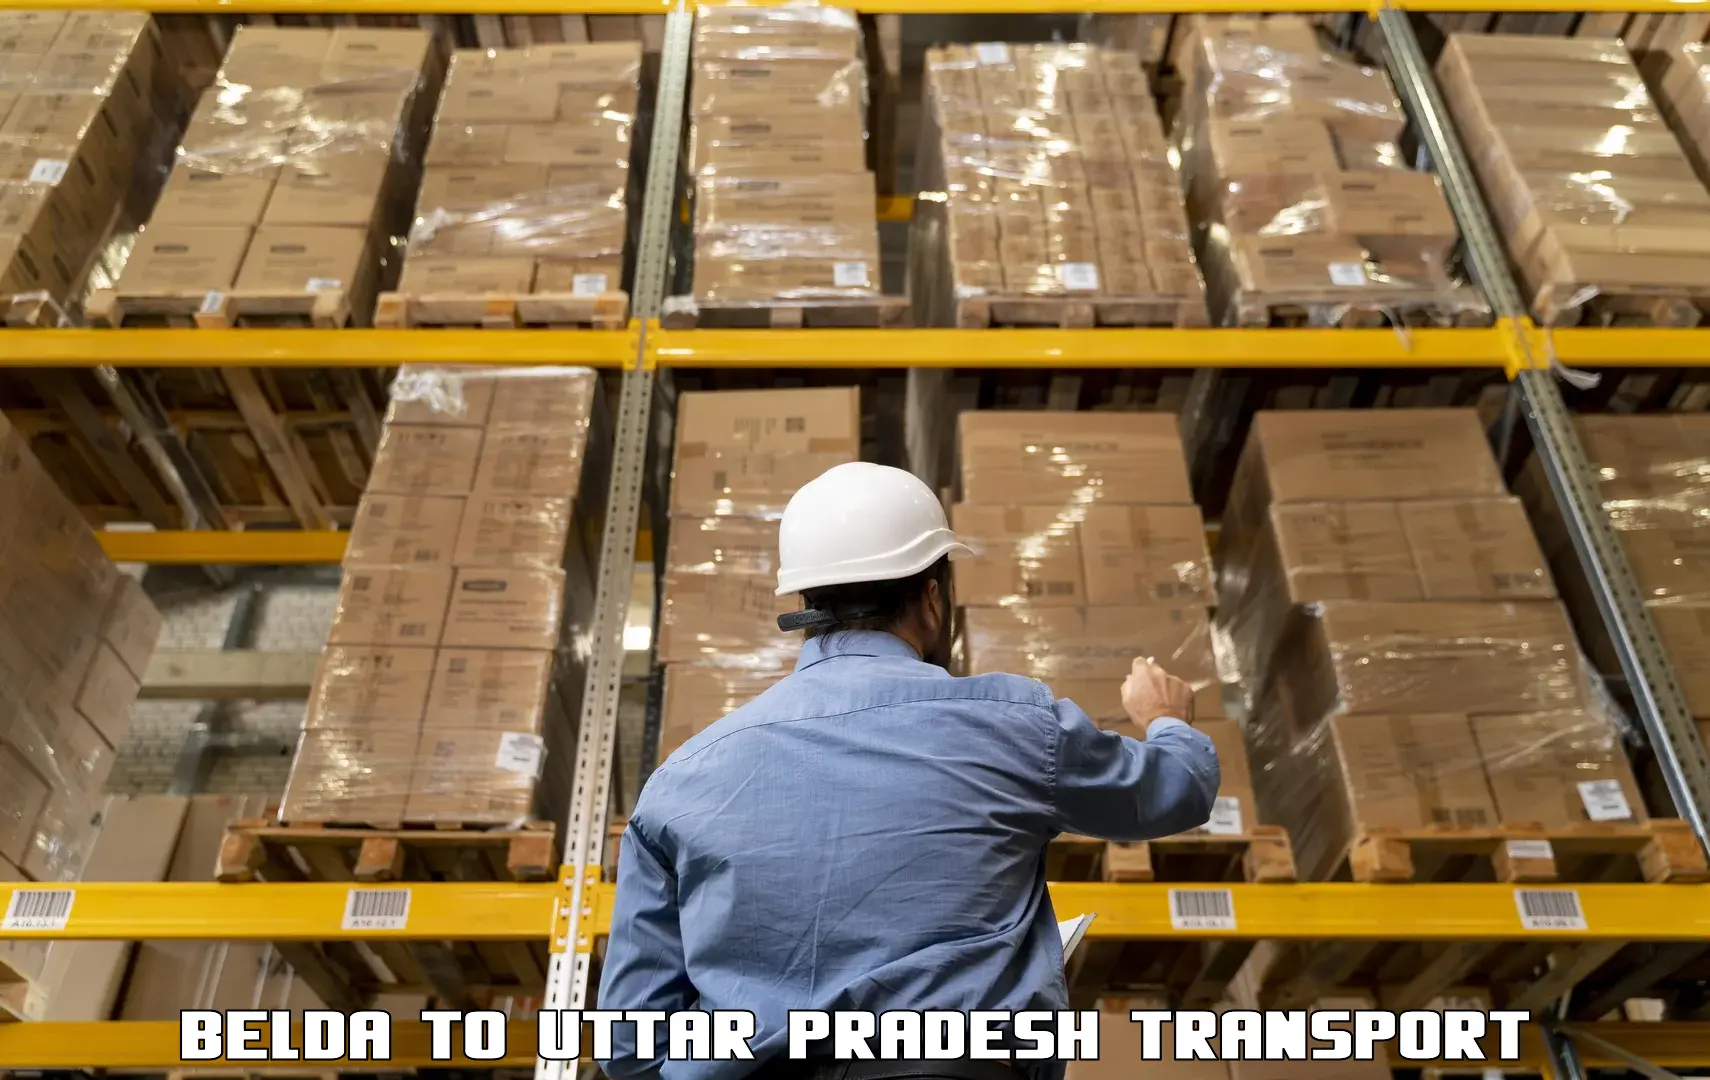 International cargo transportation services Belda to Uttar Pradesh